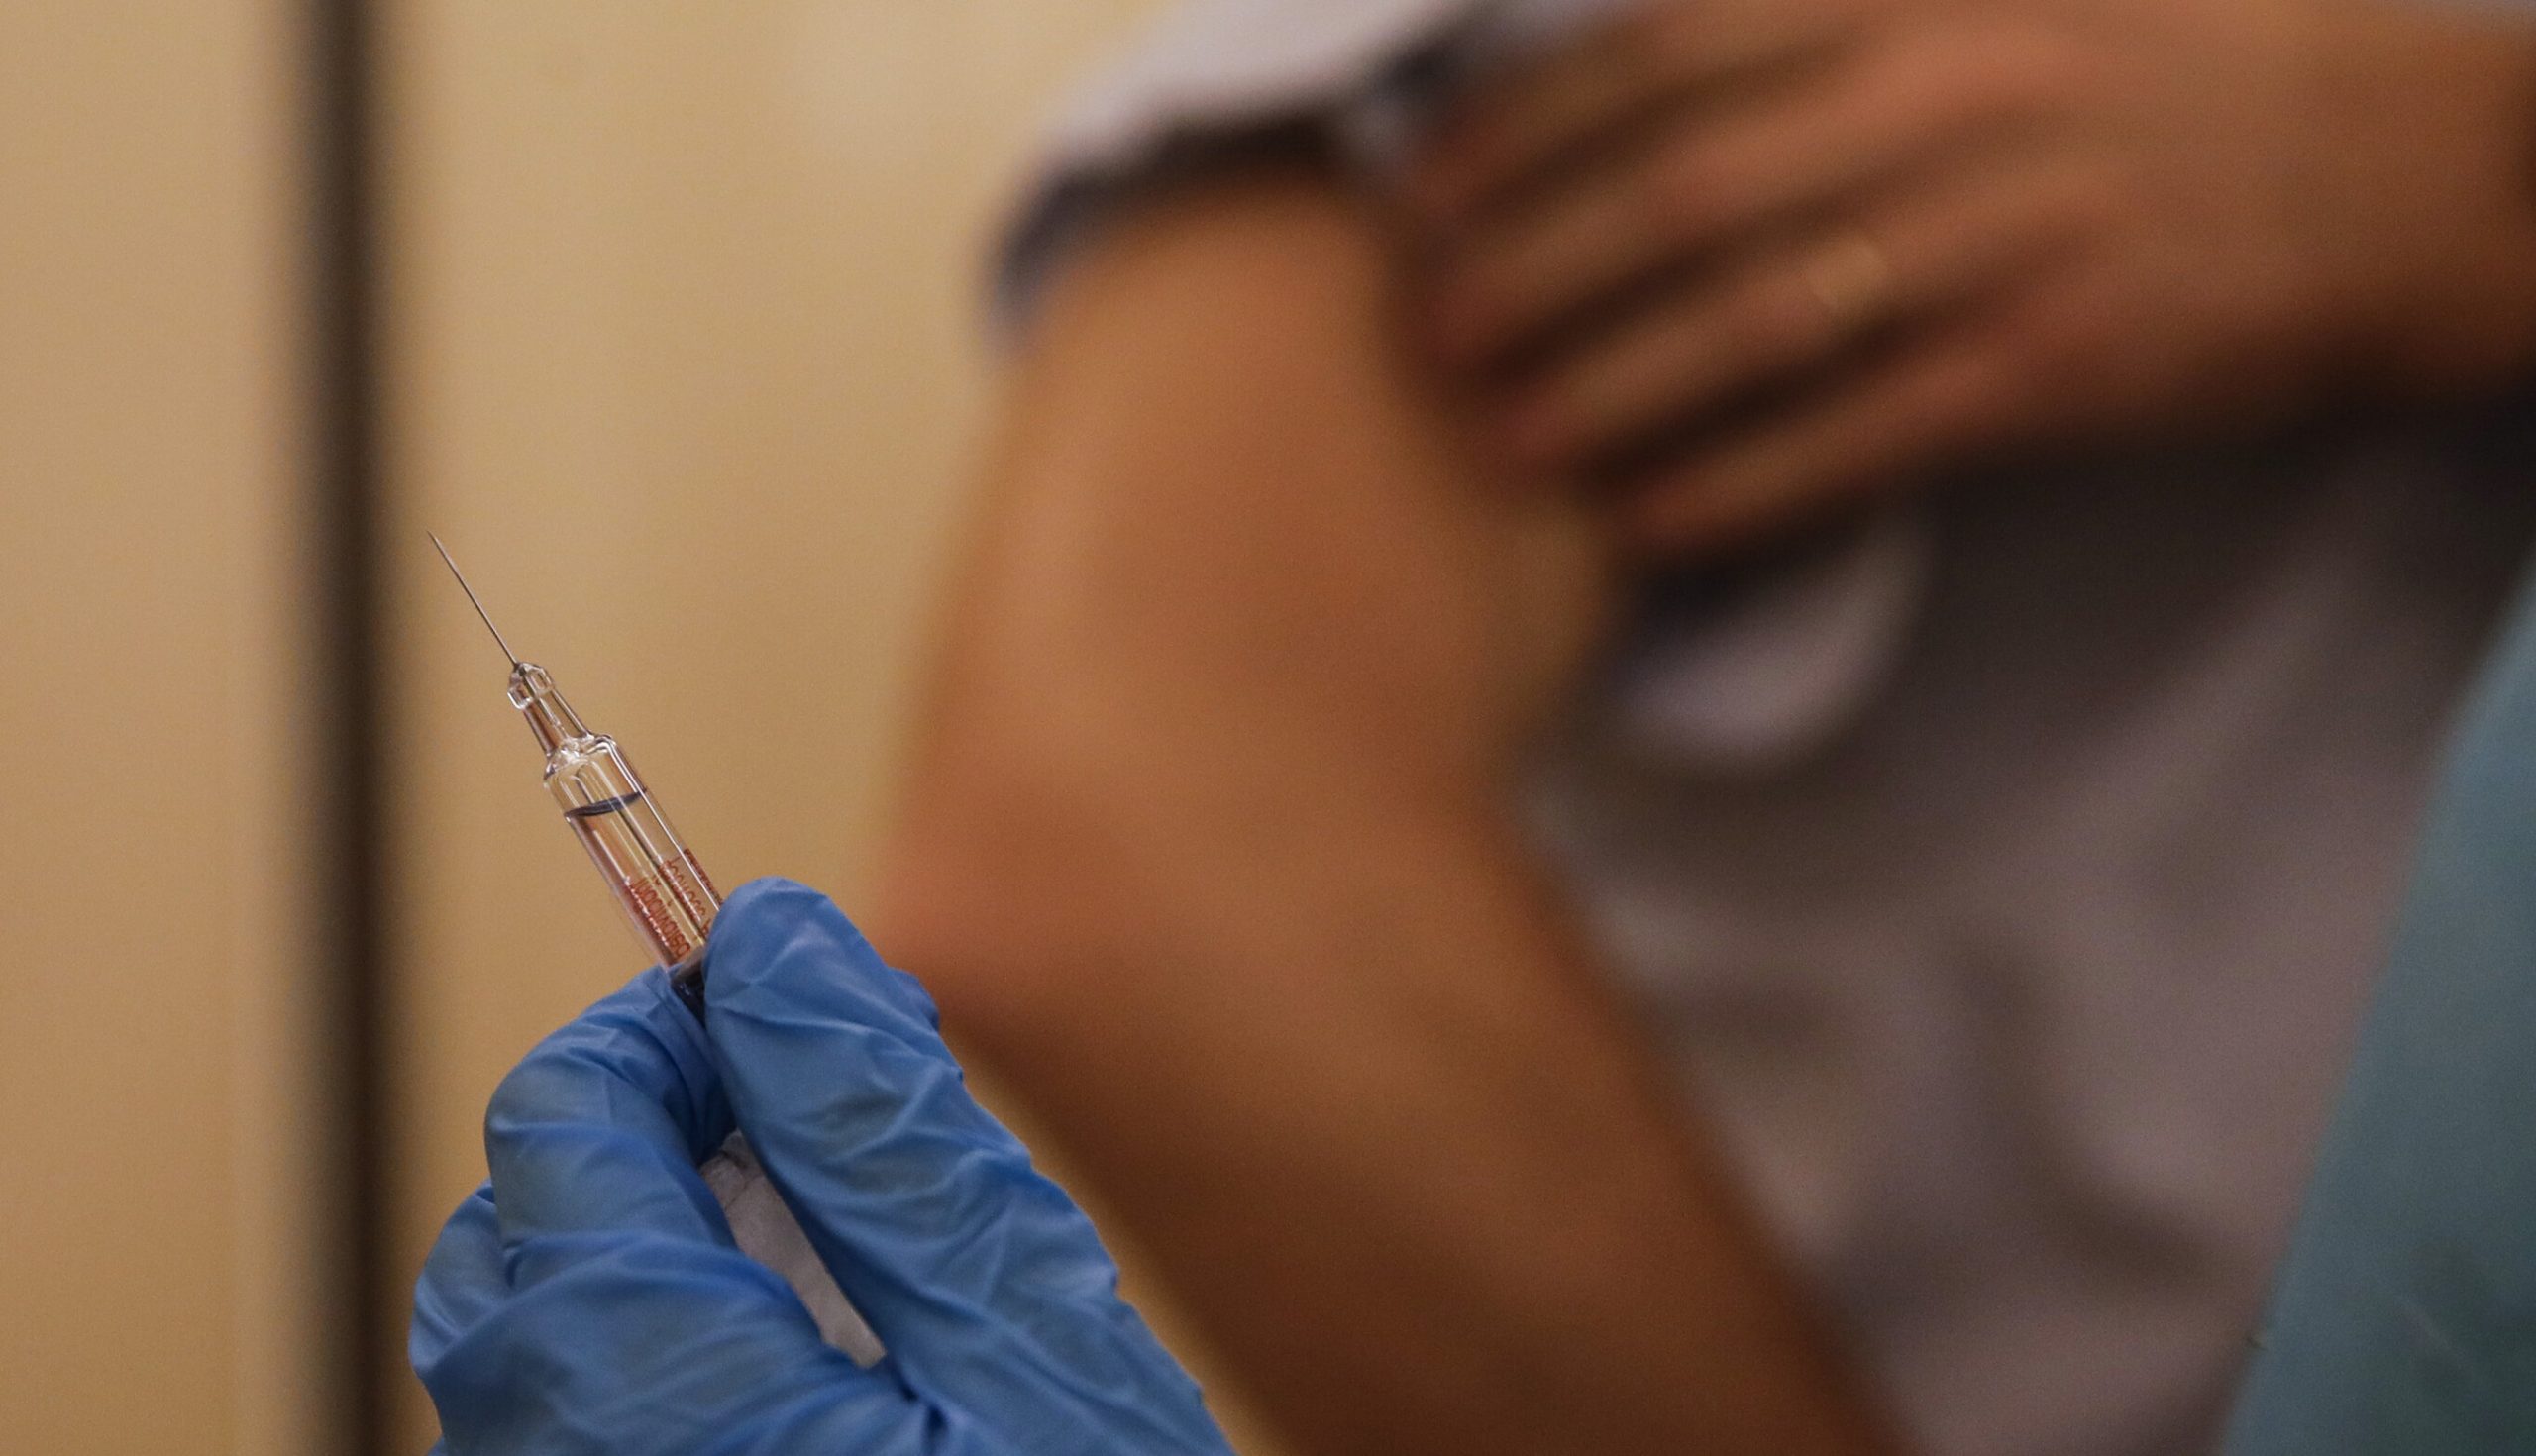 Italia| 12 lucrători din domeniul medical au primit ser fiziologic în loc de vaccin anti-Covid